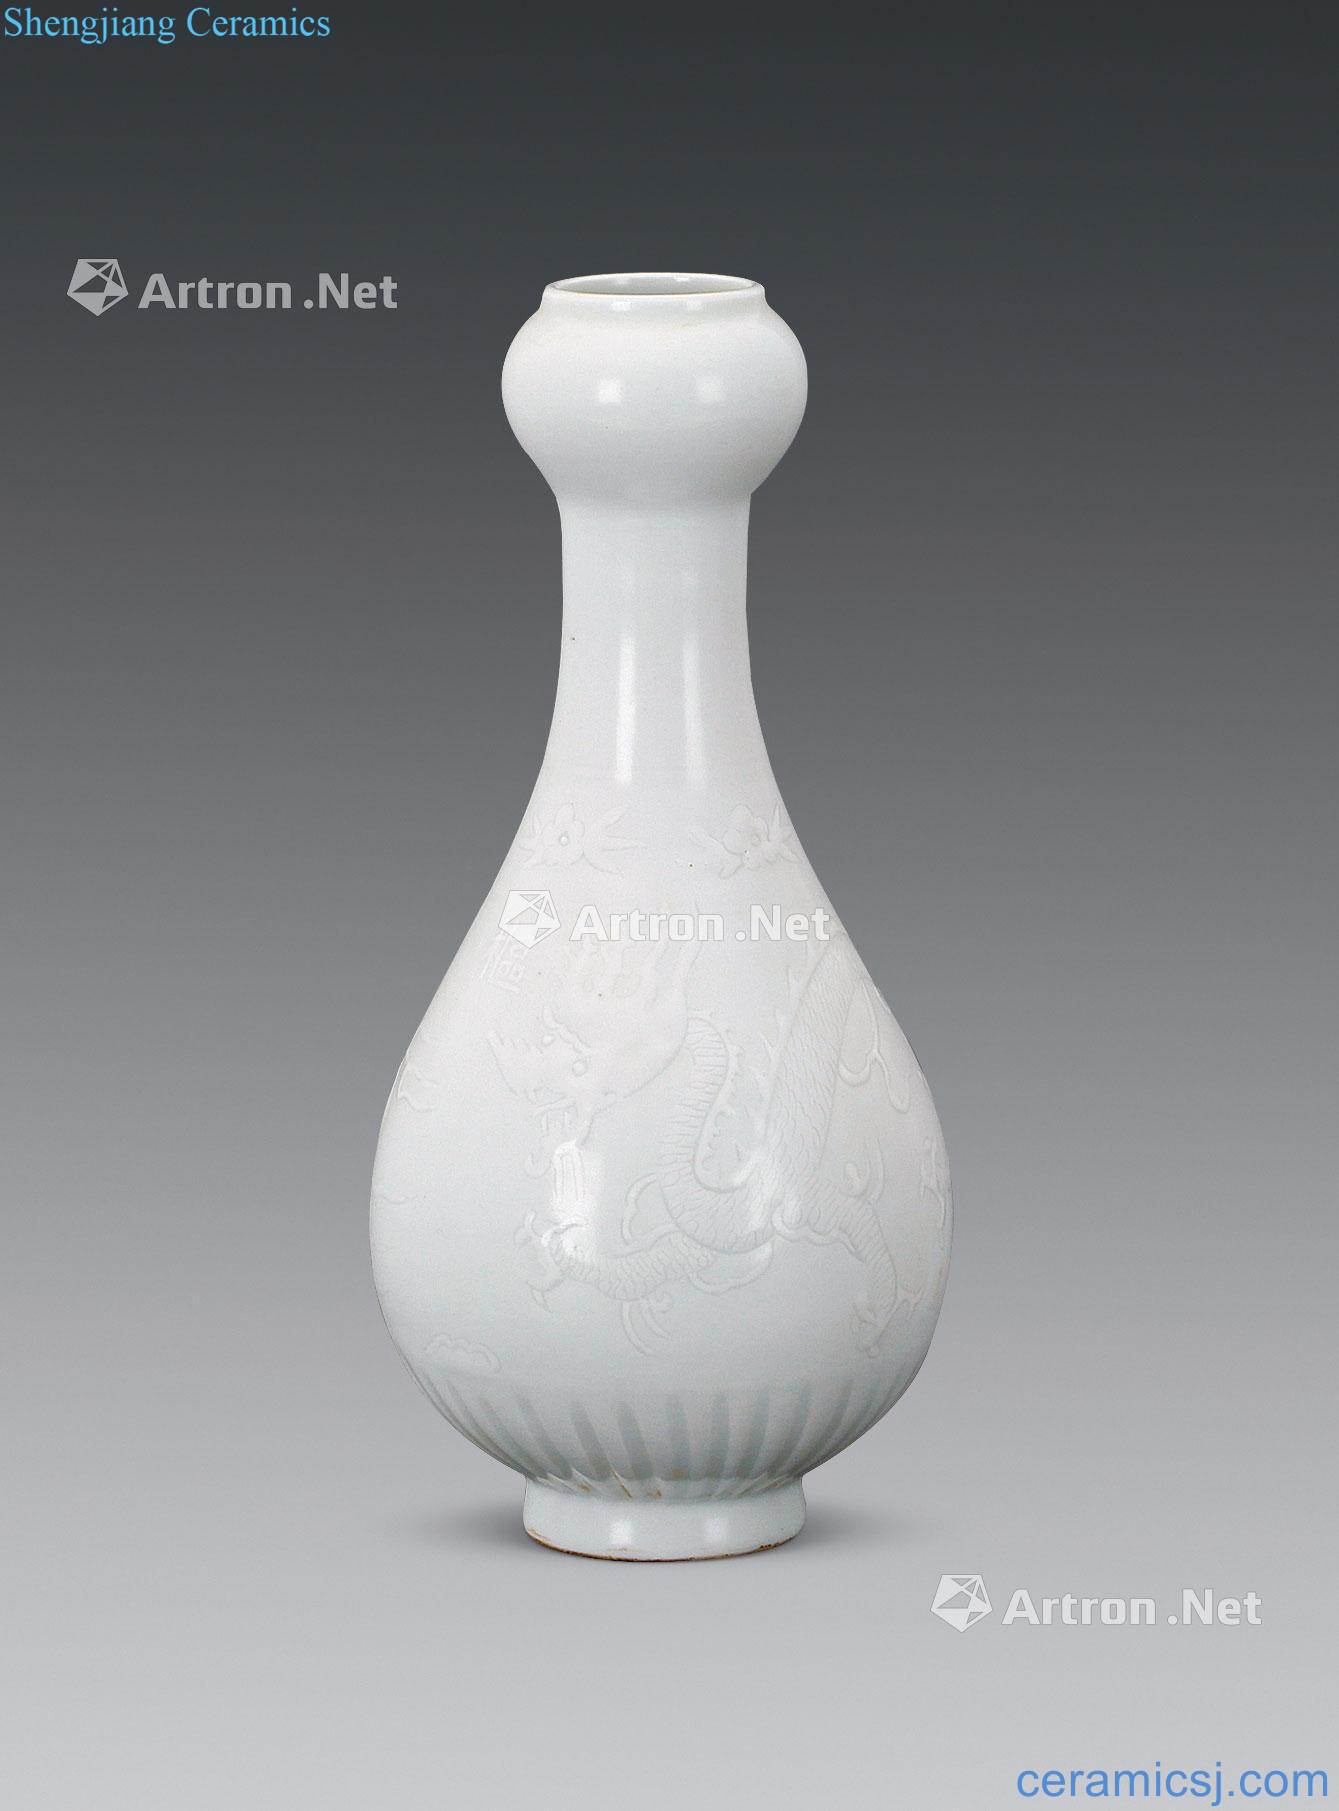 yuan Pivot house printed glaze dragon garlic bottle